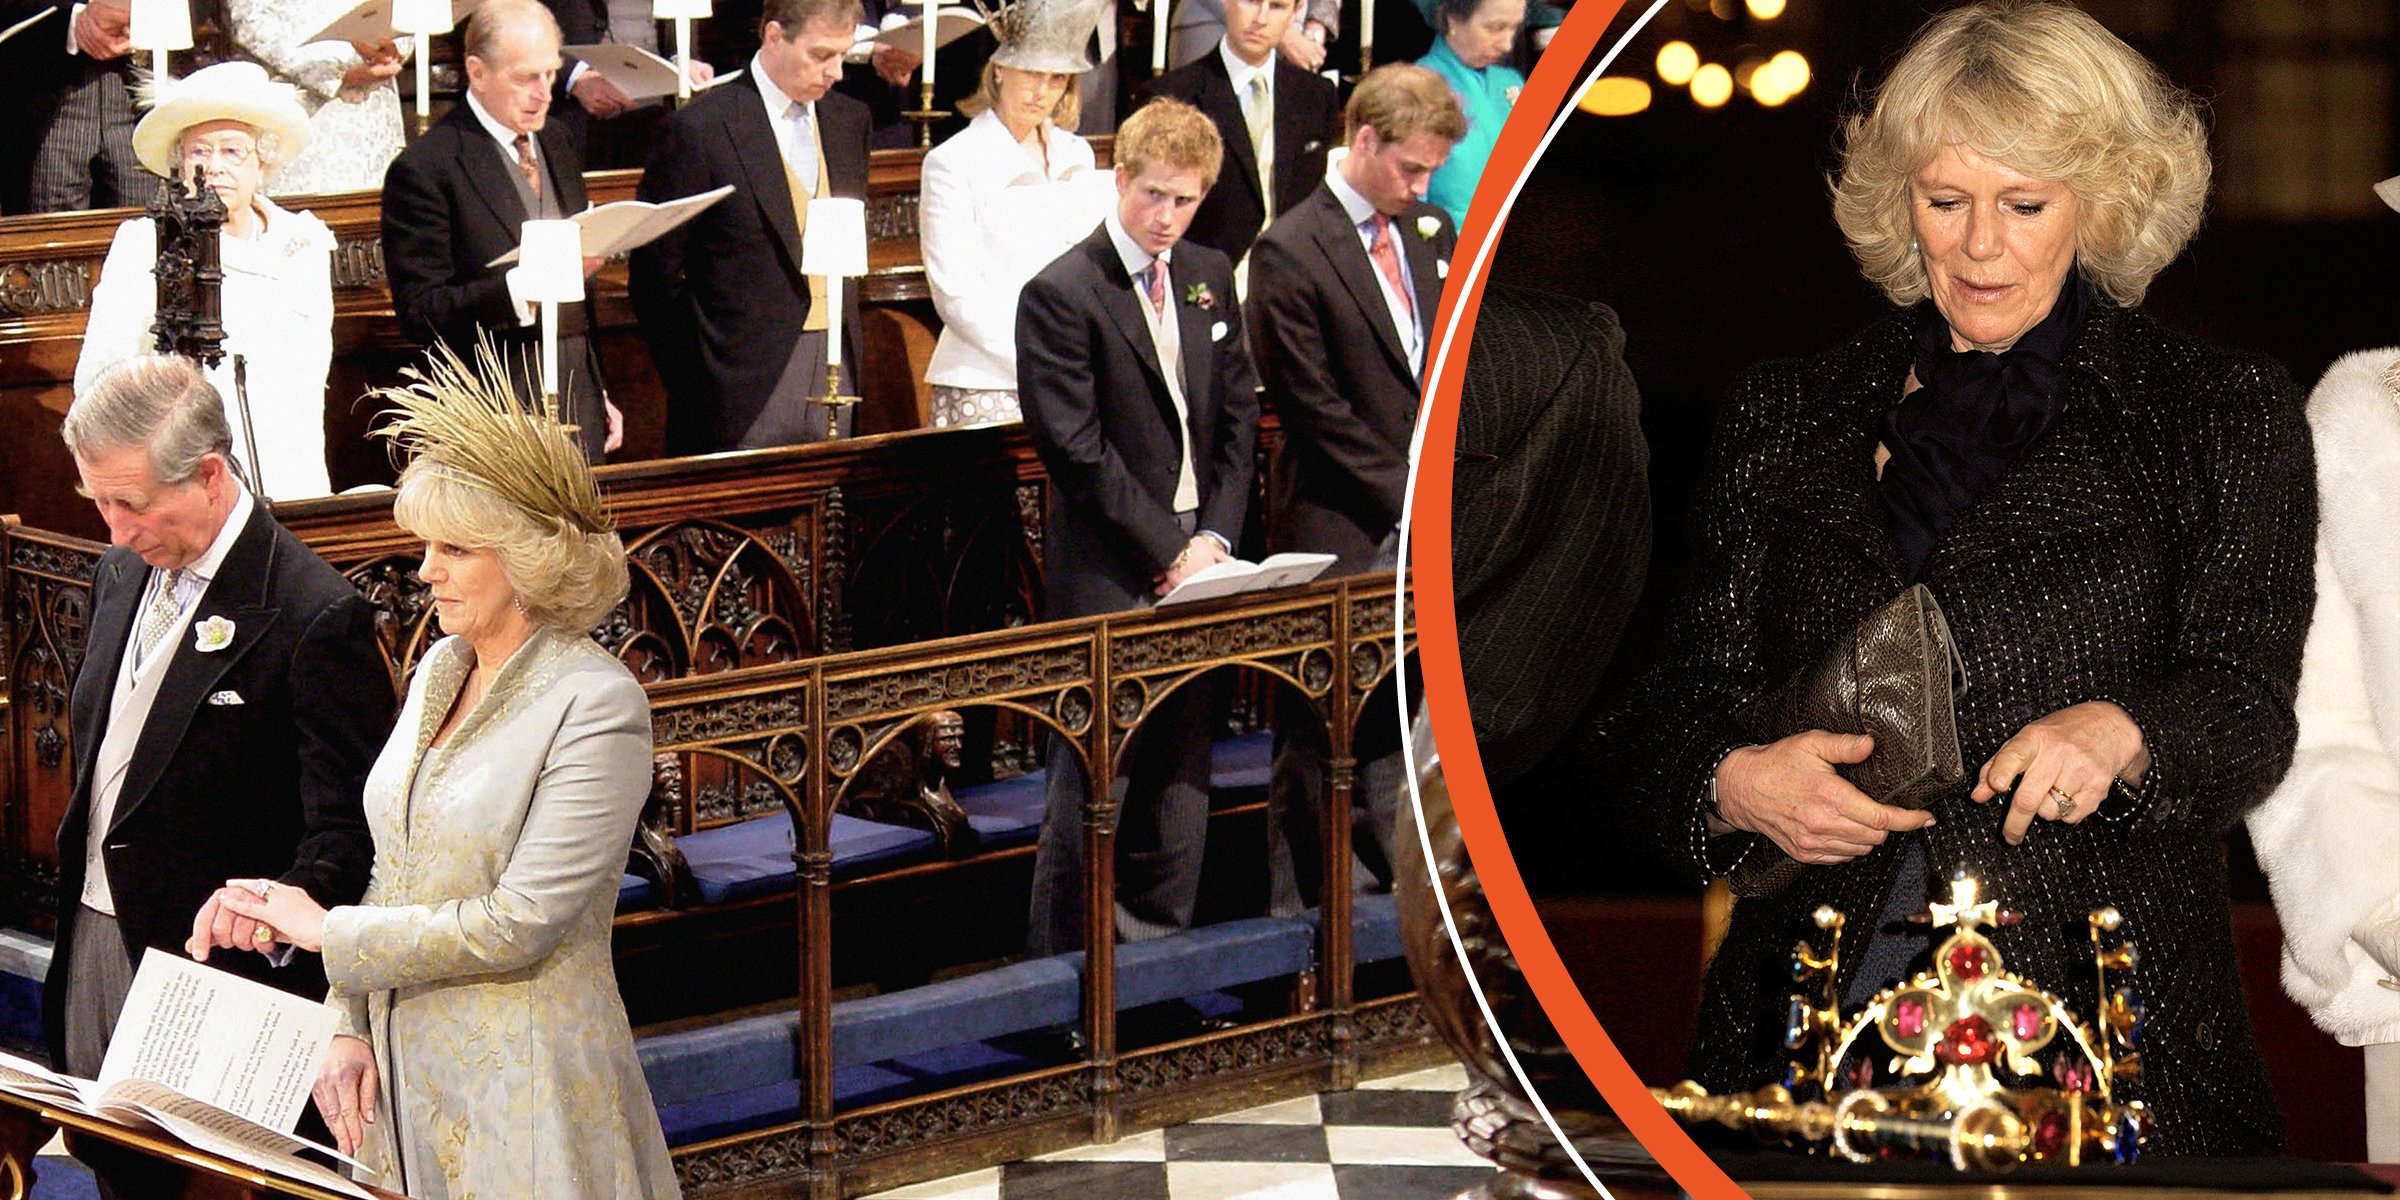 El rey Charles III, la reina consorte y la familia real | Camilla reina consorte | Foto: Getty Images